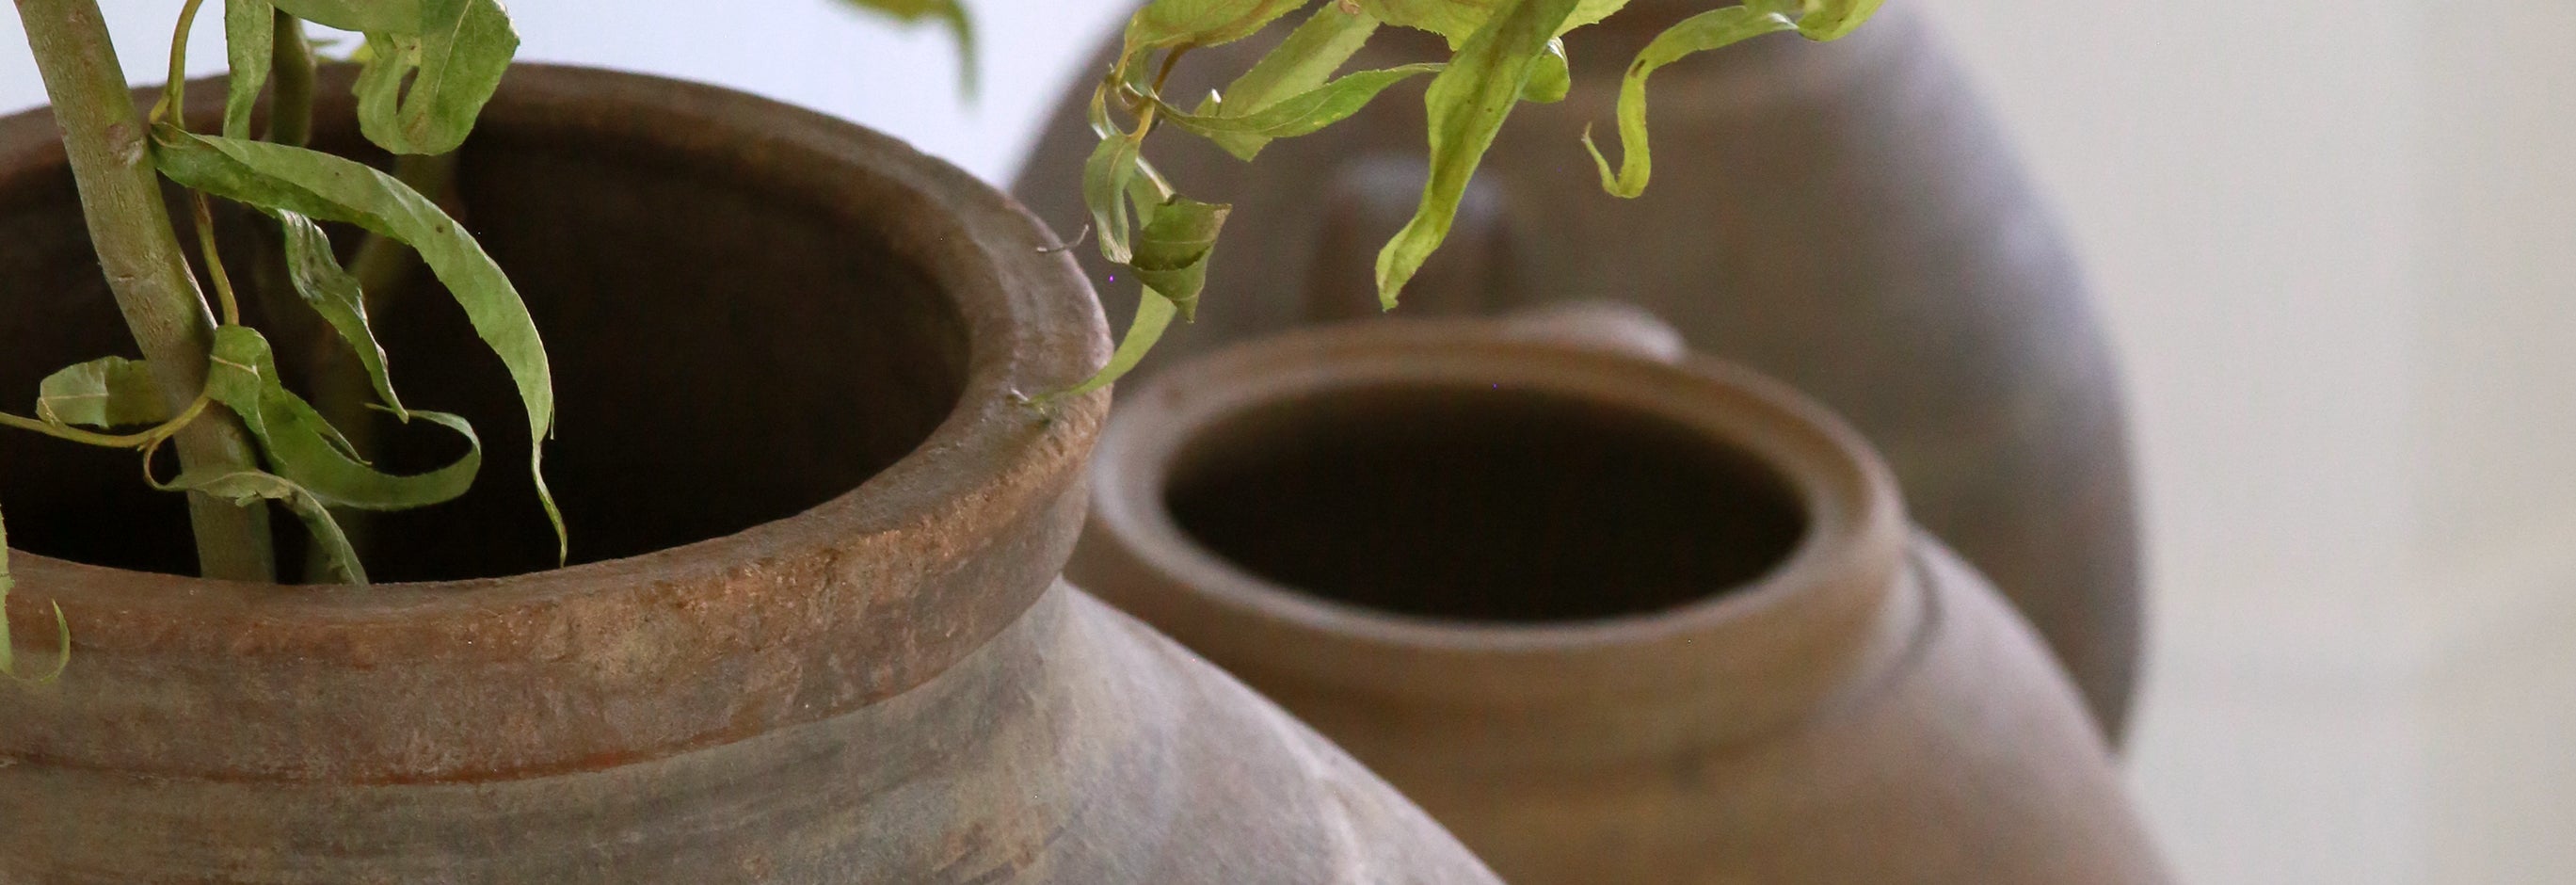 Indoor terracotta pots as planter for indoor willow tree 